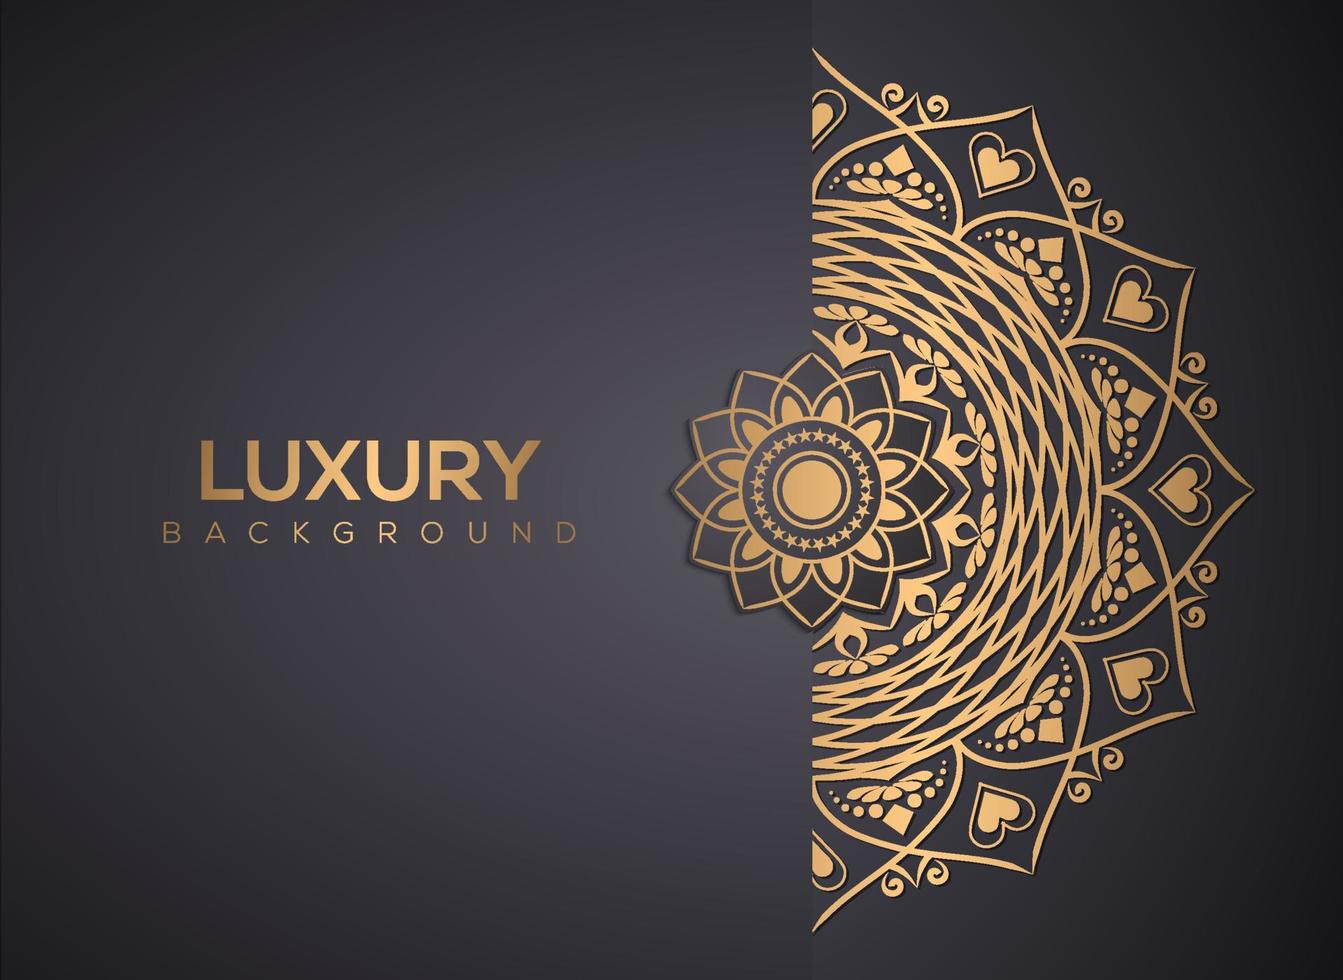 Luxury mandala background, decorative background with an elegant mandala design vector